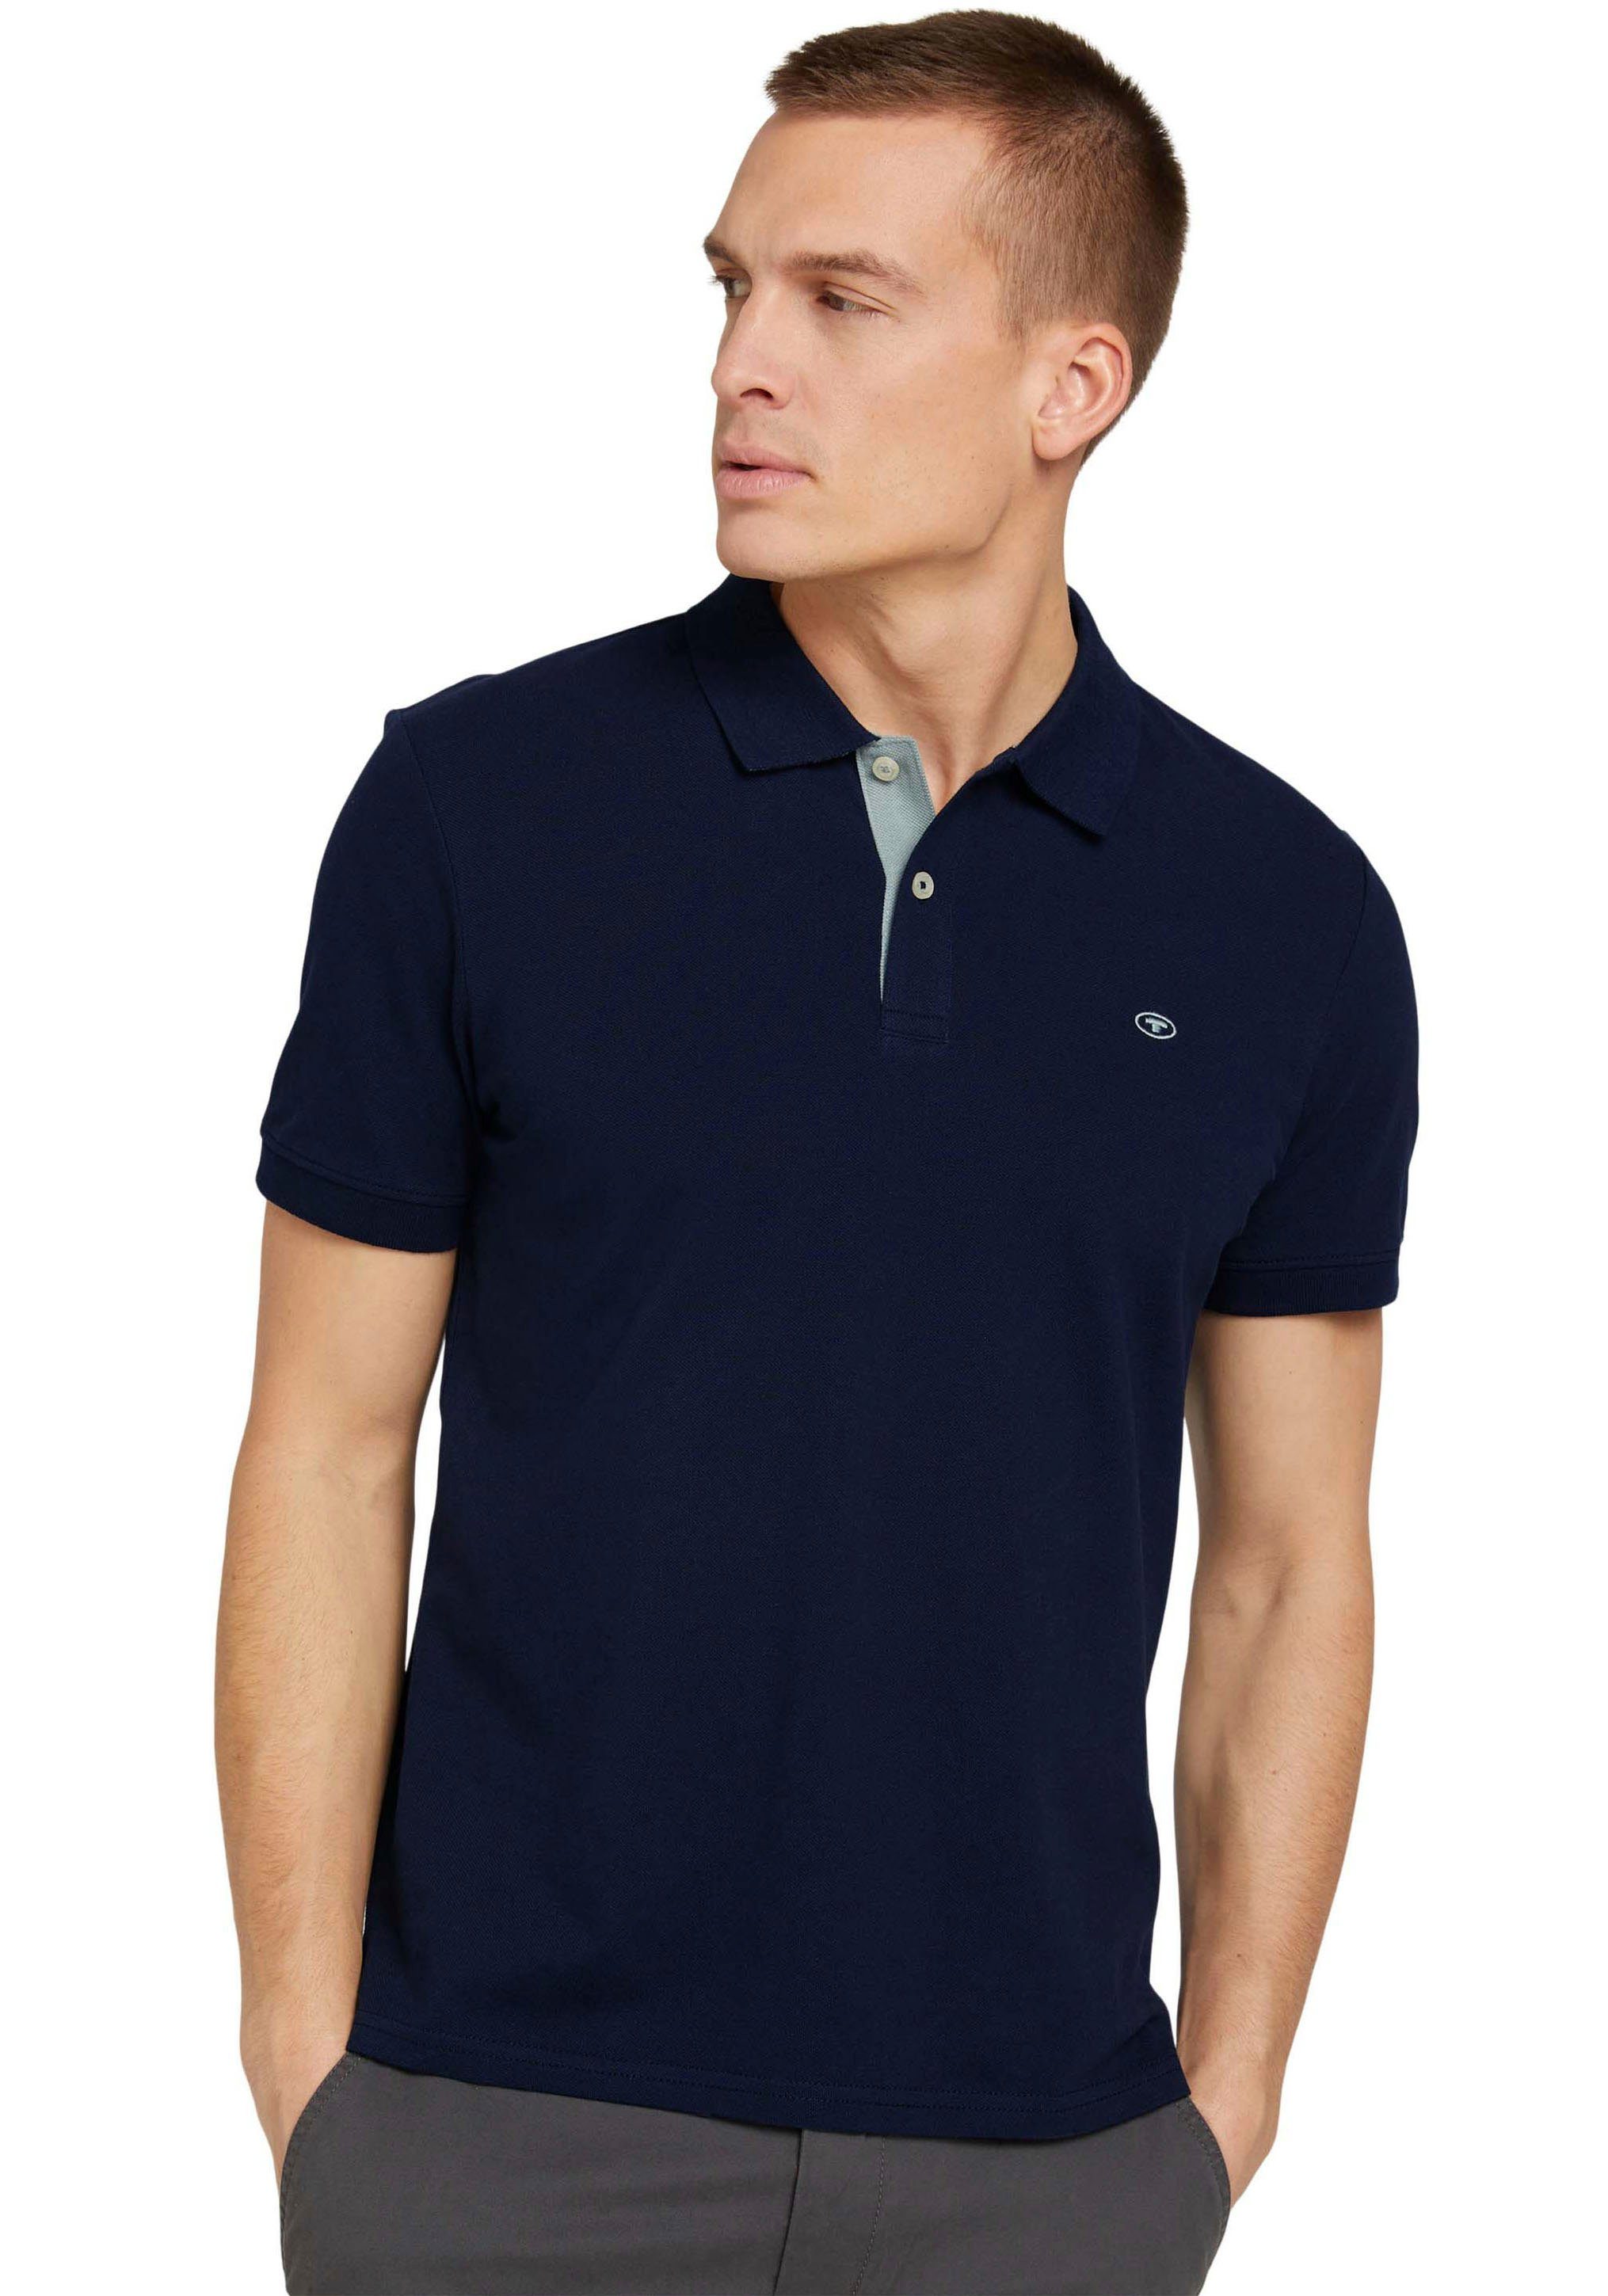 TOM TAILOR Poloshirt mit kontrastfarbener Knopfleiste und kleinem Logo navy